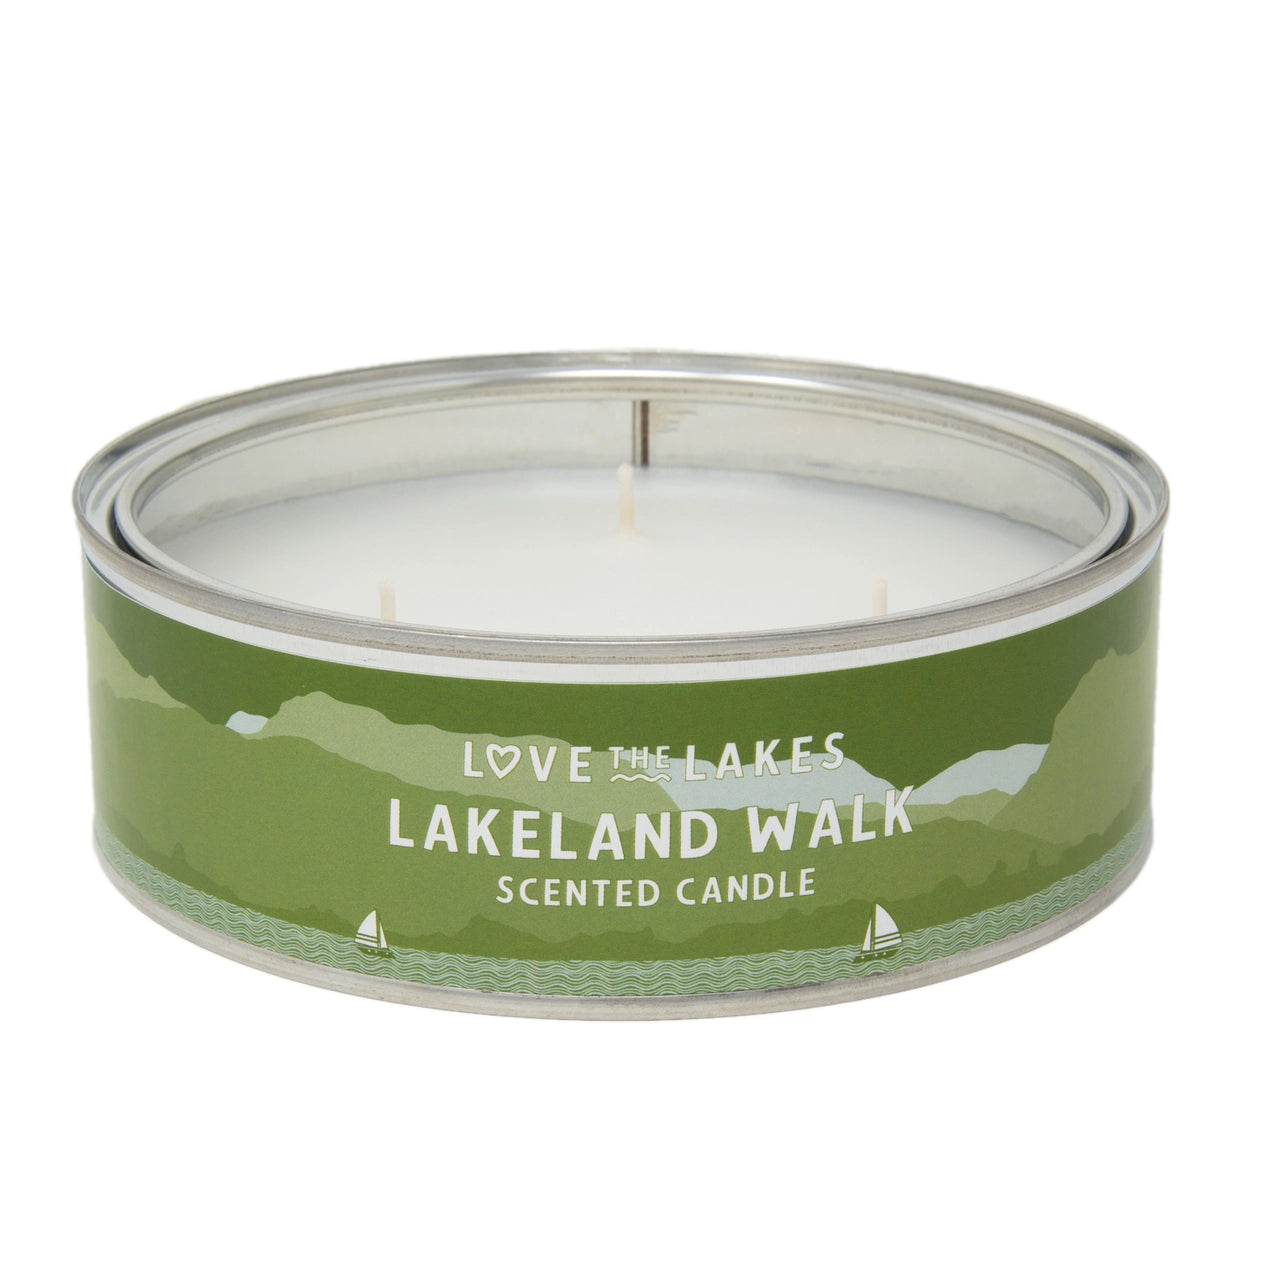 Love the Lakes Lakeland Walk Candle - 3 sizes